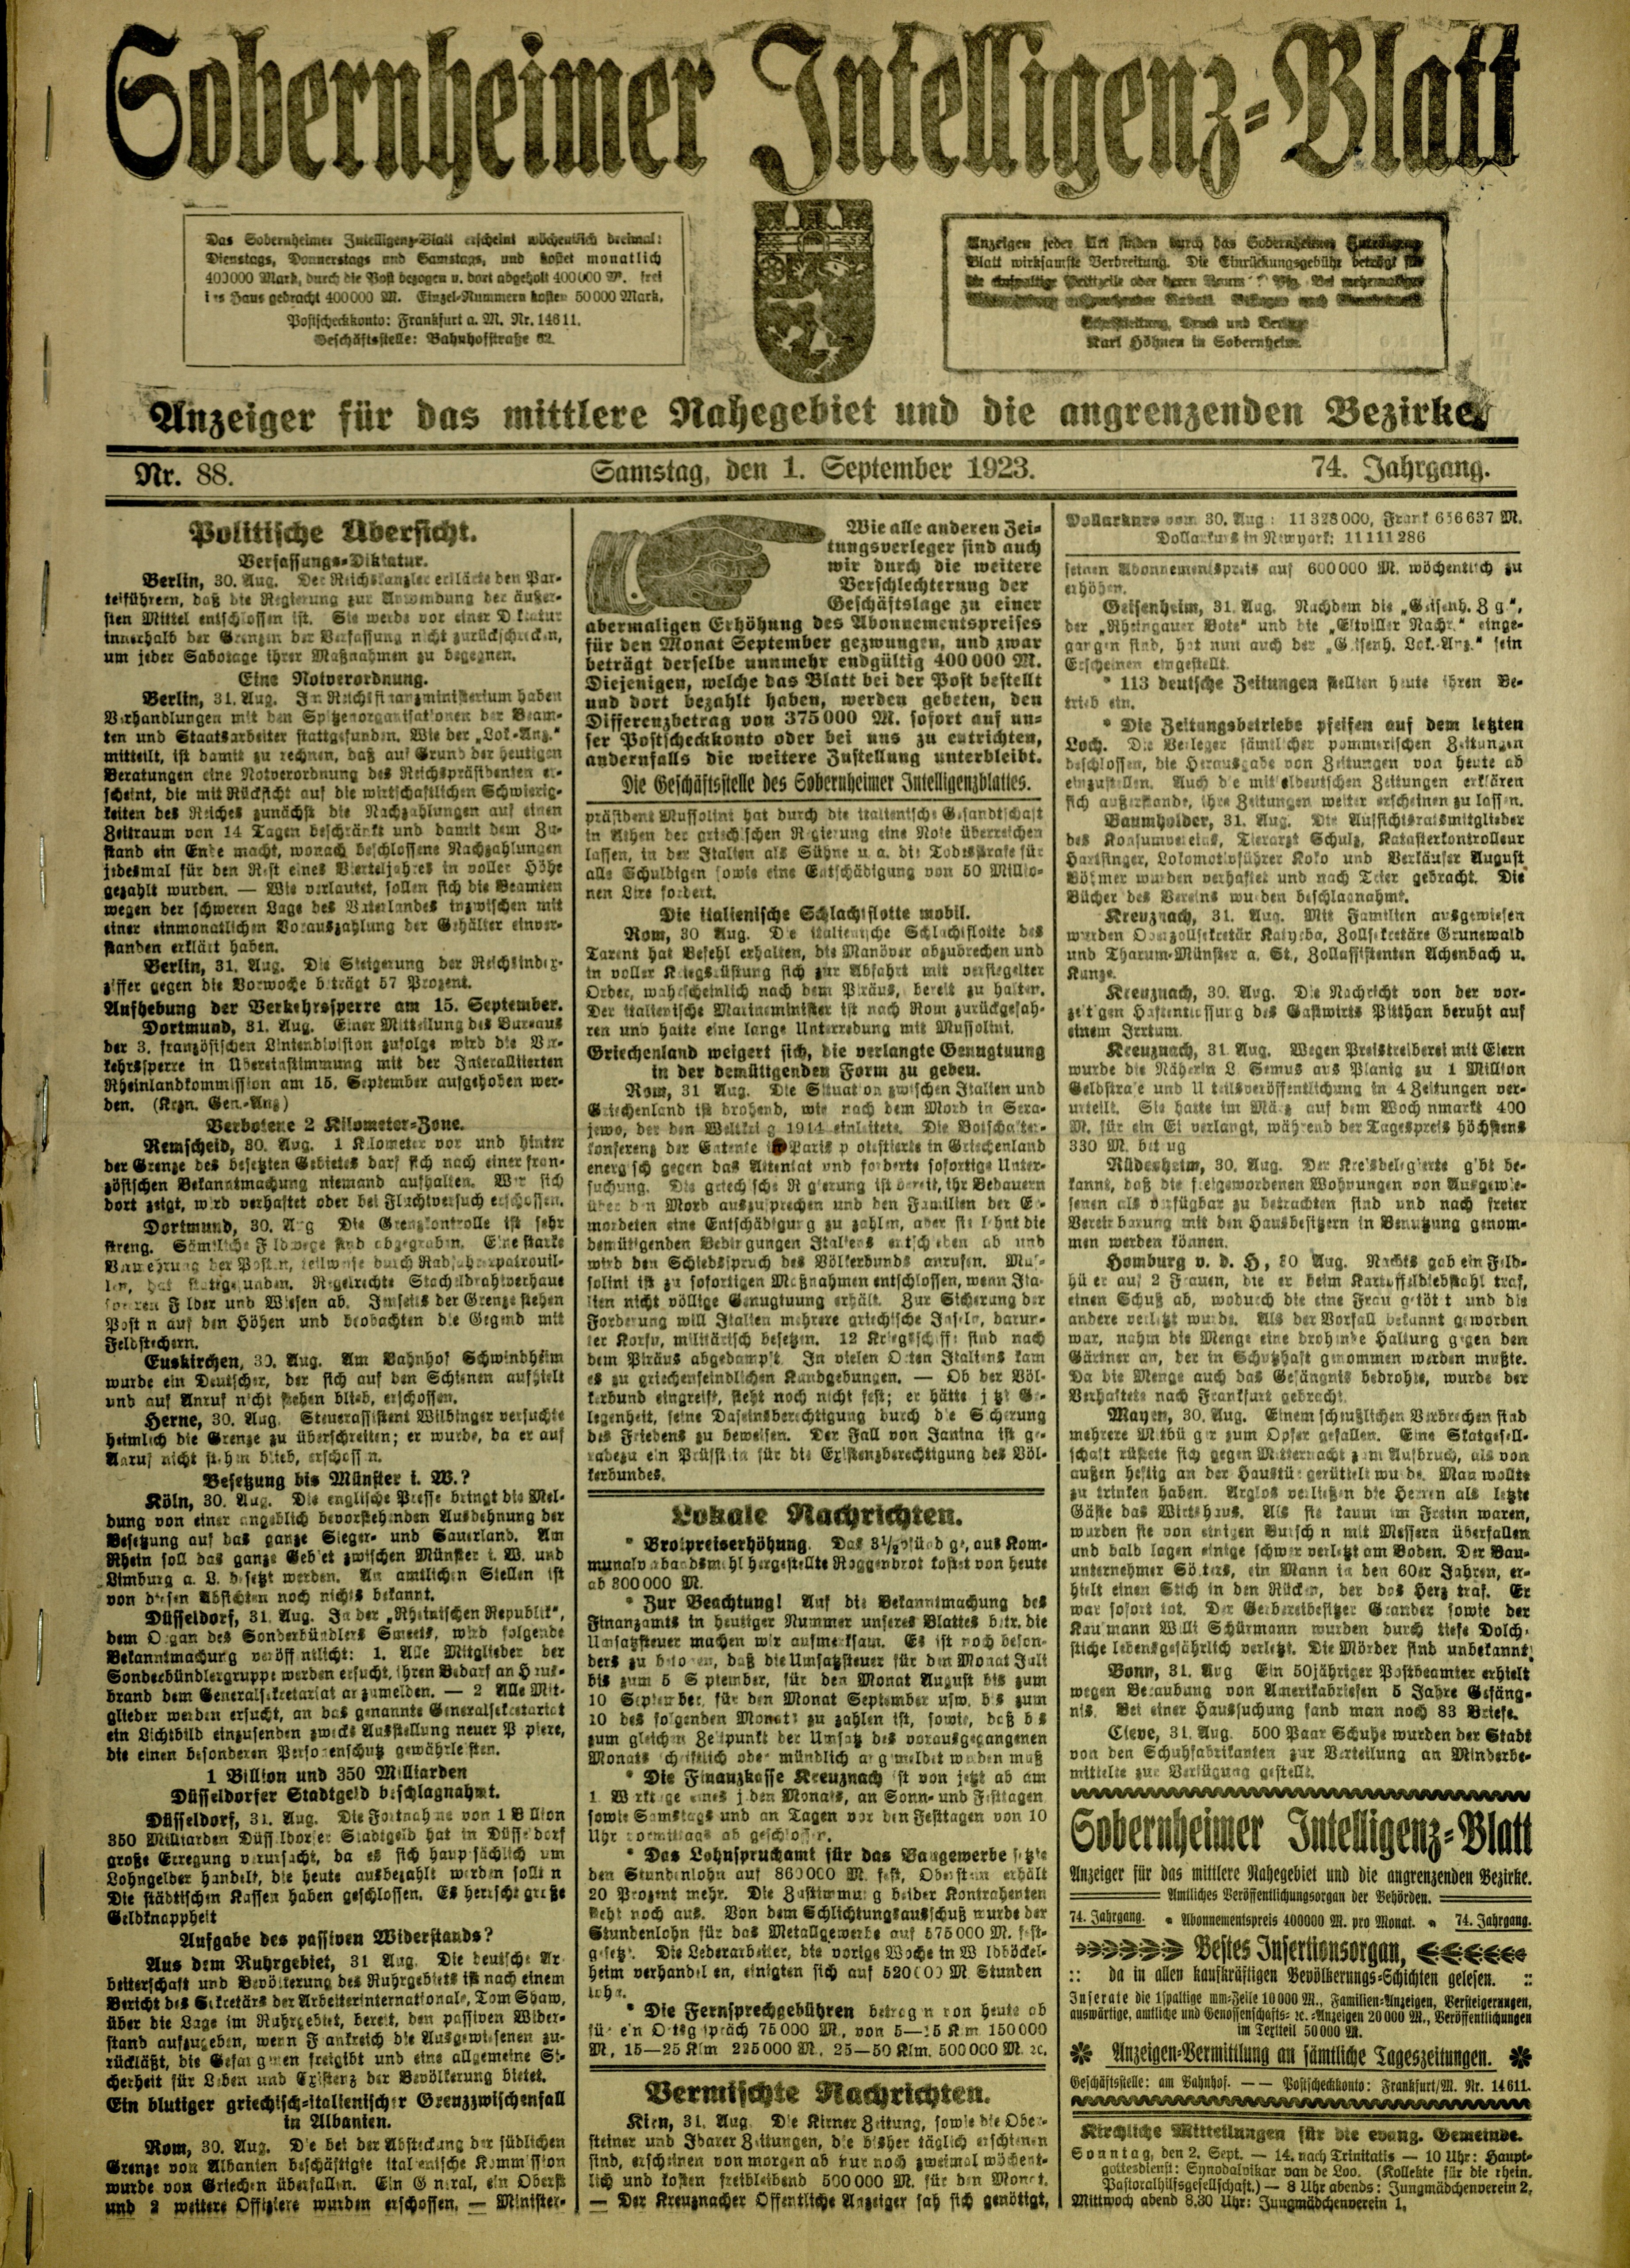 Zeitung: Sobernheimer Intelligenzblatt; September 1923, Jg. 73 Nr. 88 (Heimatmuseum Bad Sobernheim CC BY-NC-SA)